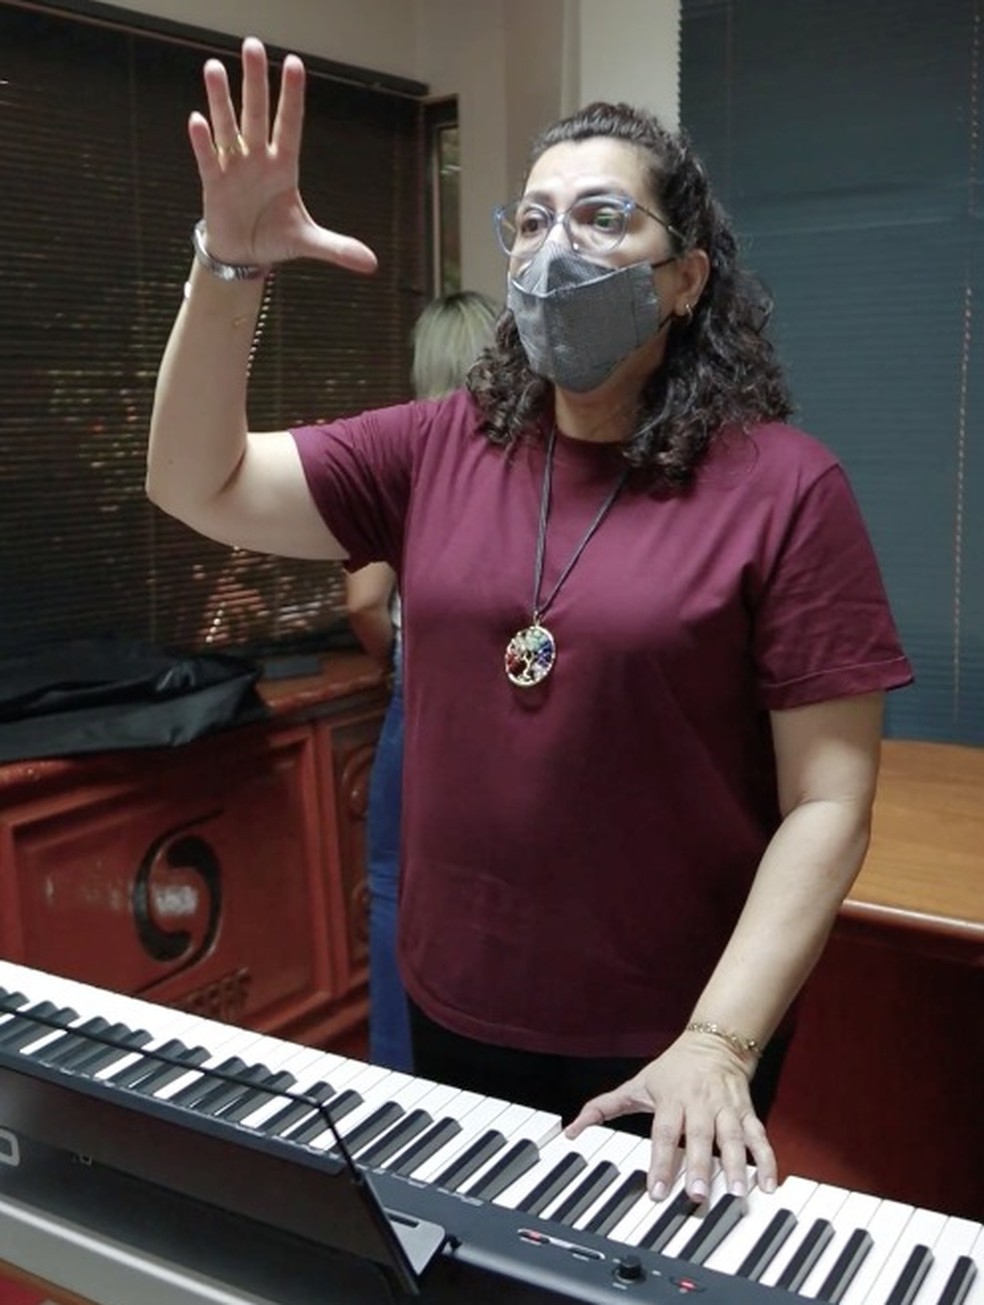 Aulas de piano para crianças, jovens e adultos – Ribeirão Preto